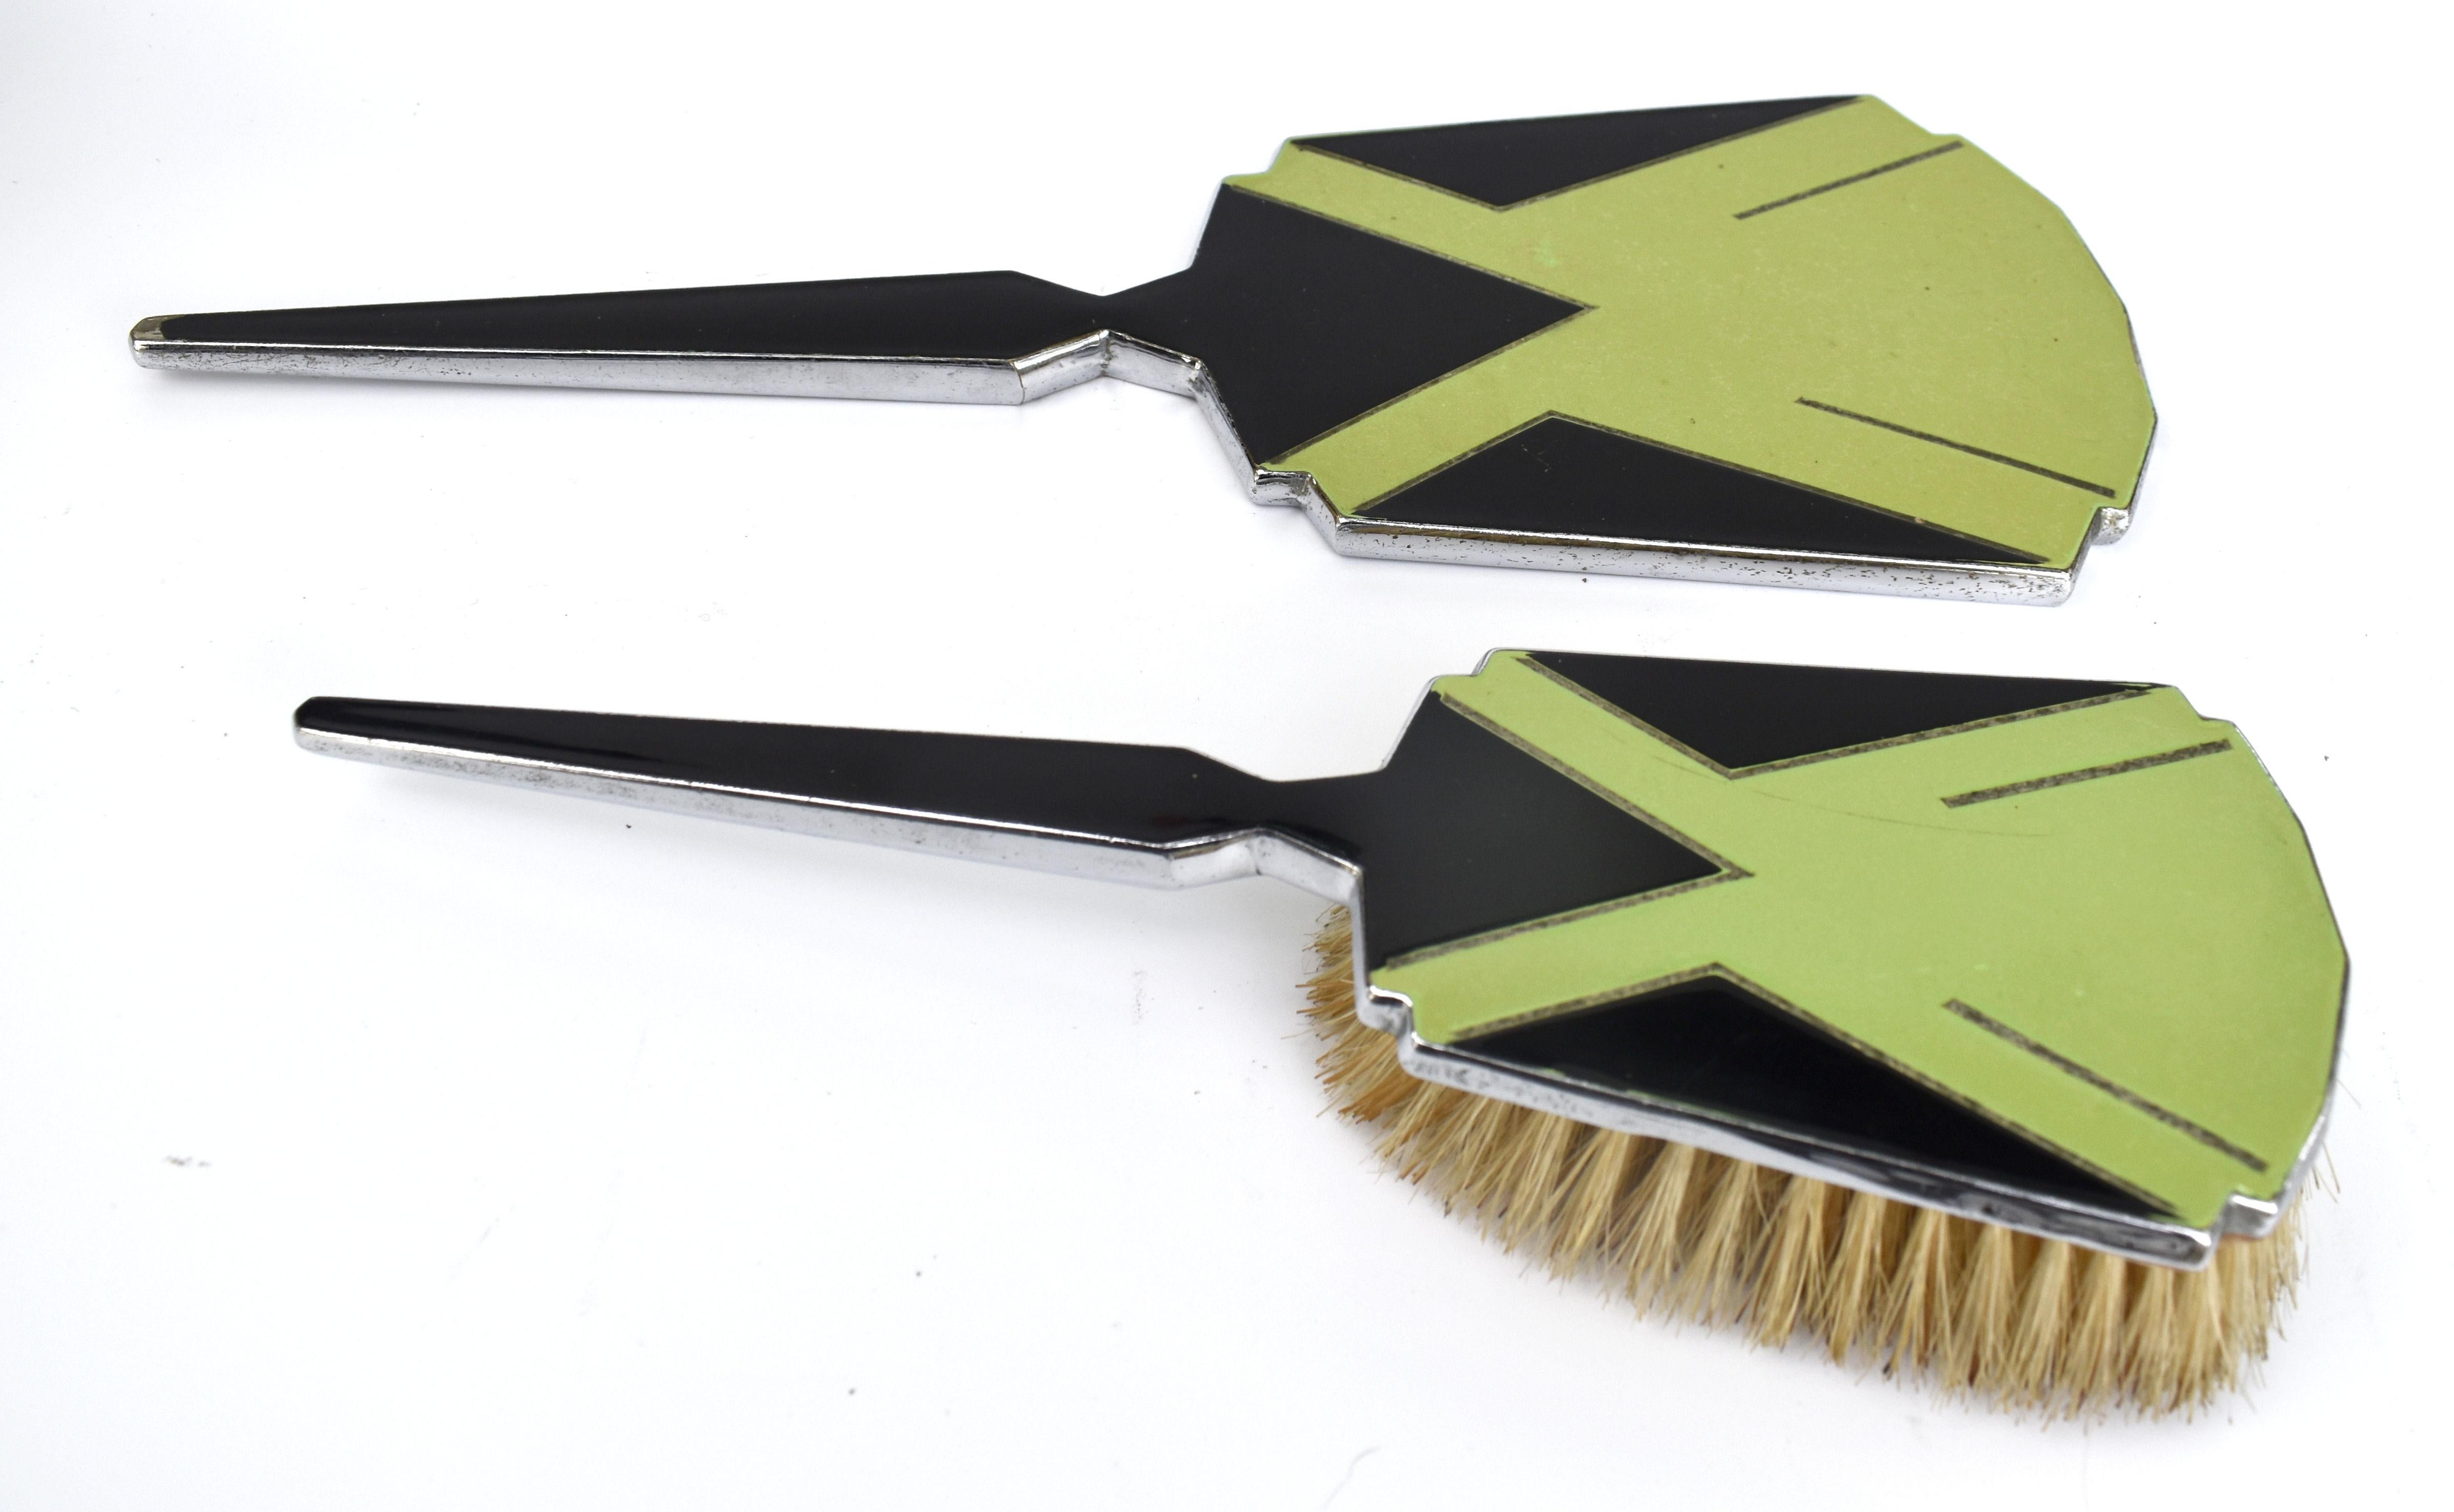 Fabuleux ensemble de coiffeuse Art Déco en métal chromé émaillé, avec un design Art Déco jazzy en vert pois et noir. L'ensemble comprend un miroir à main et une brosse à cheveux. Ce sont des pièces parfaites pour servir d'accessoires à votre